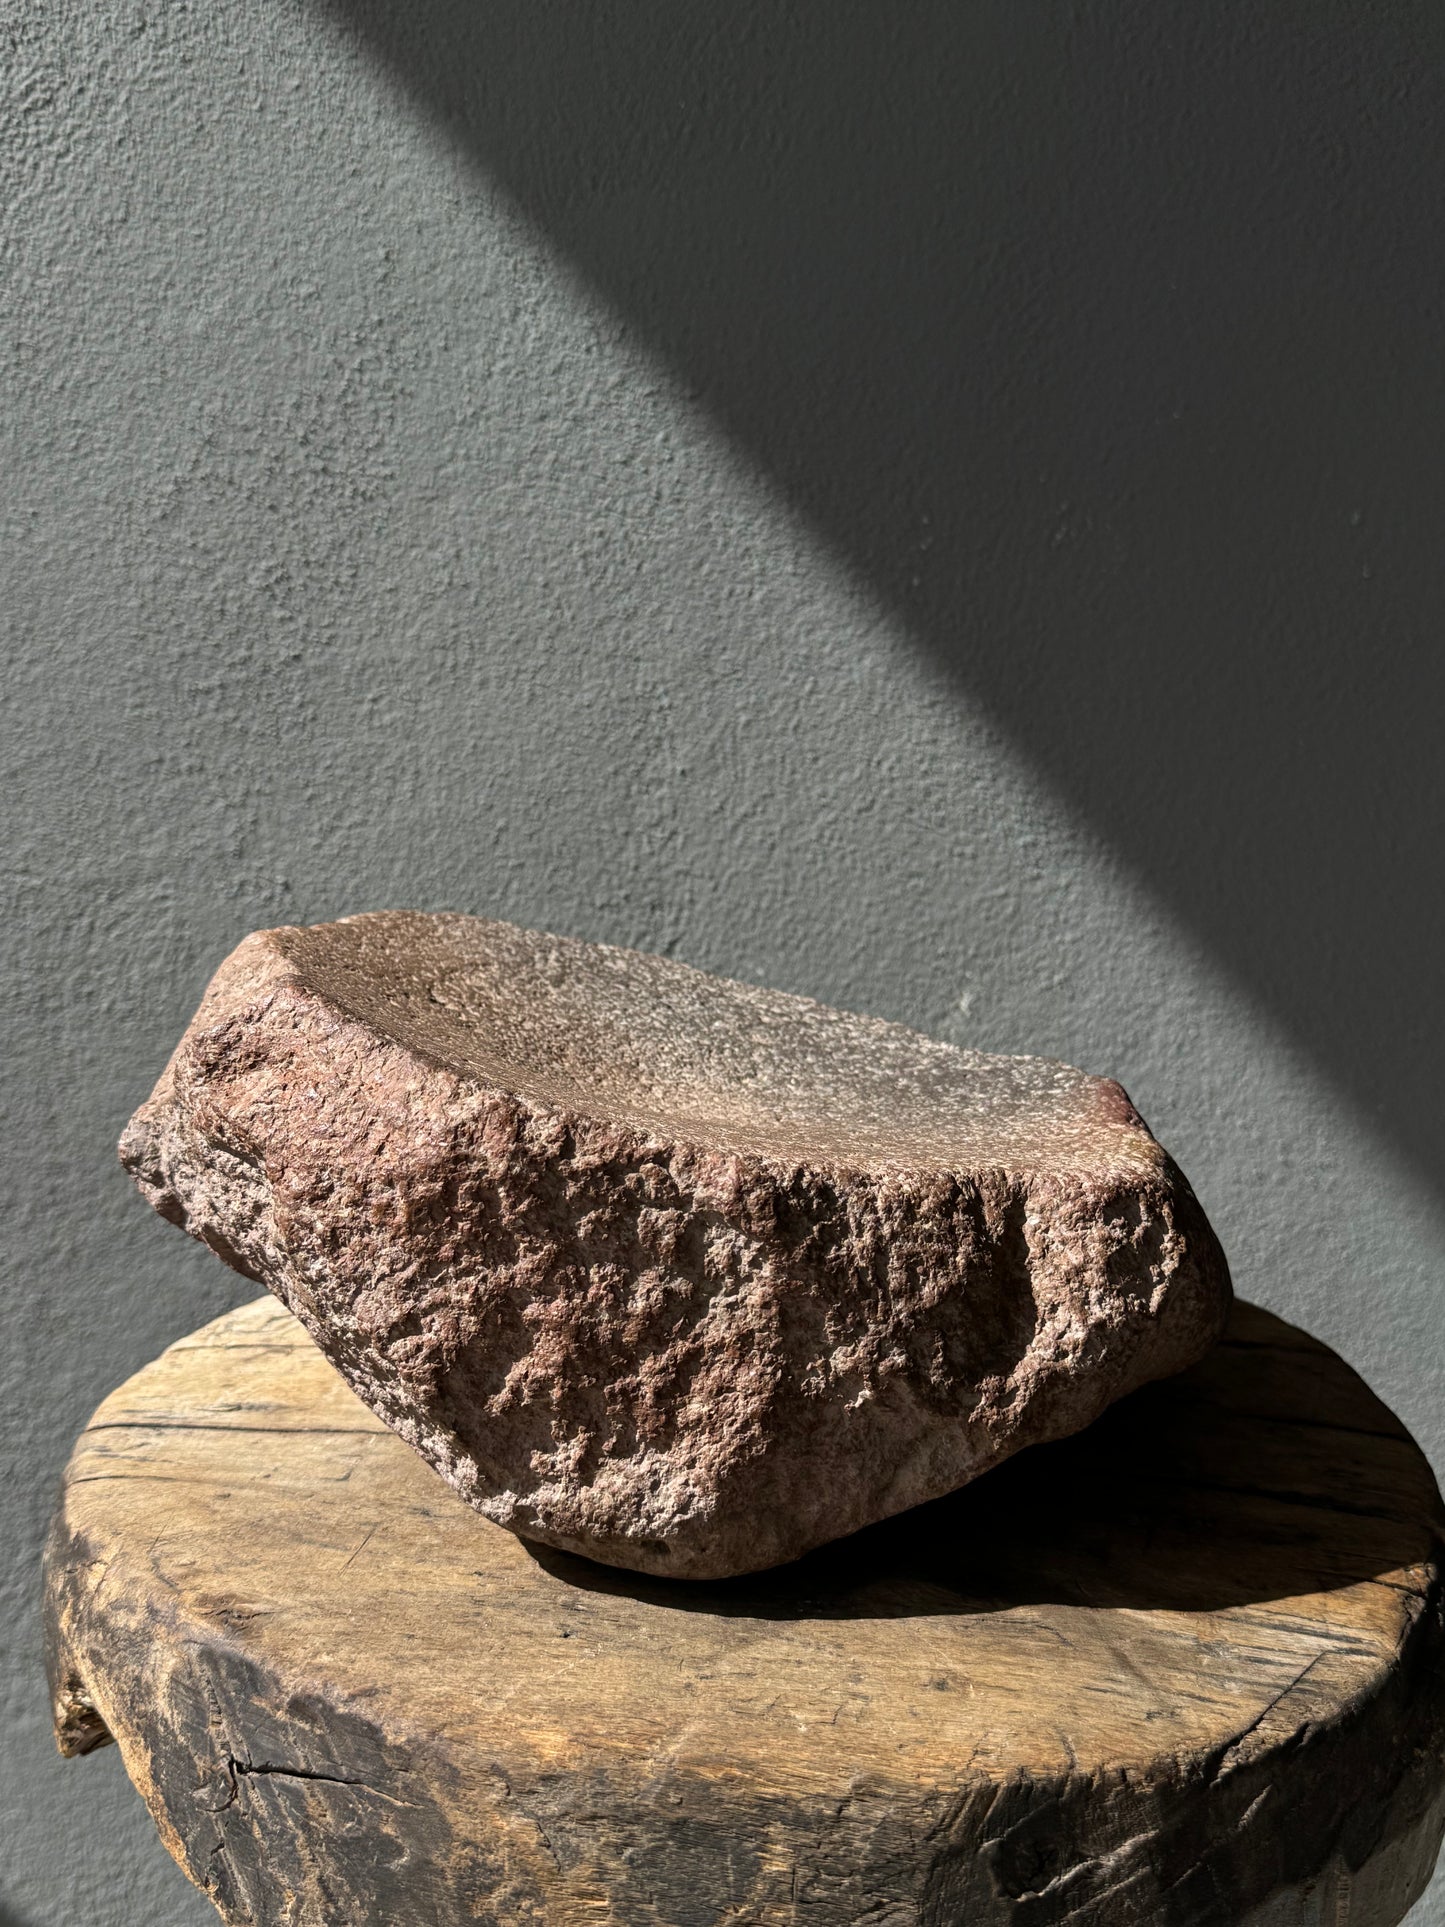 River Stone Mortar From San Luis Potosí, Mexico / Huilanche De Piedra De Río